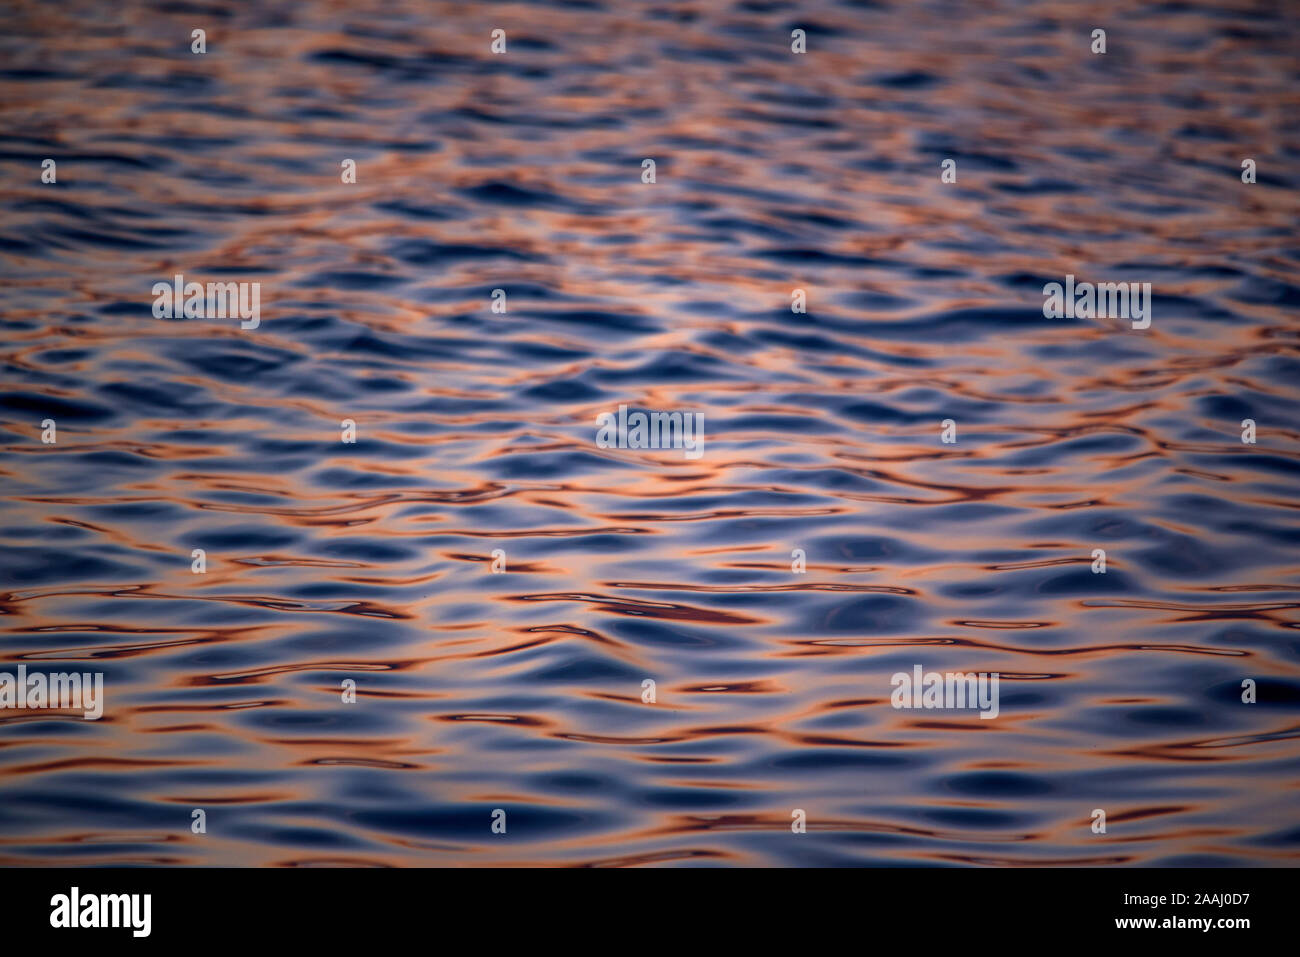 Close-up of douce vagues dans la lumière dorée. Reflets de lumière sur l'eau. Banque D'Images